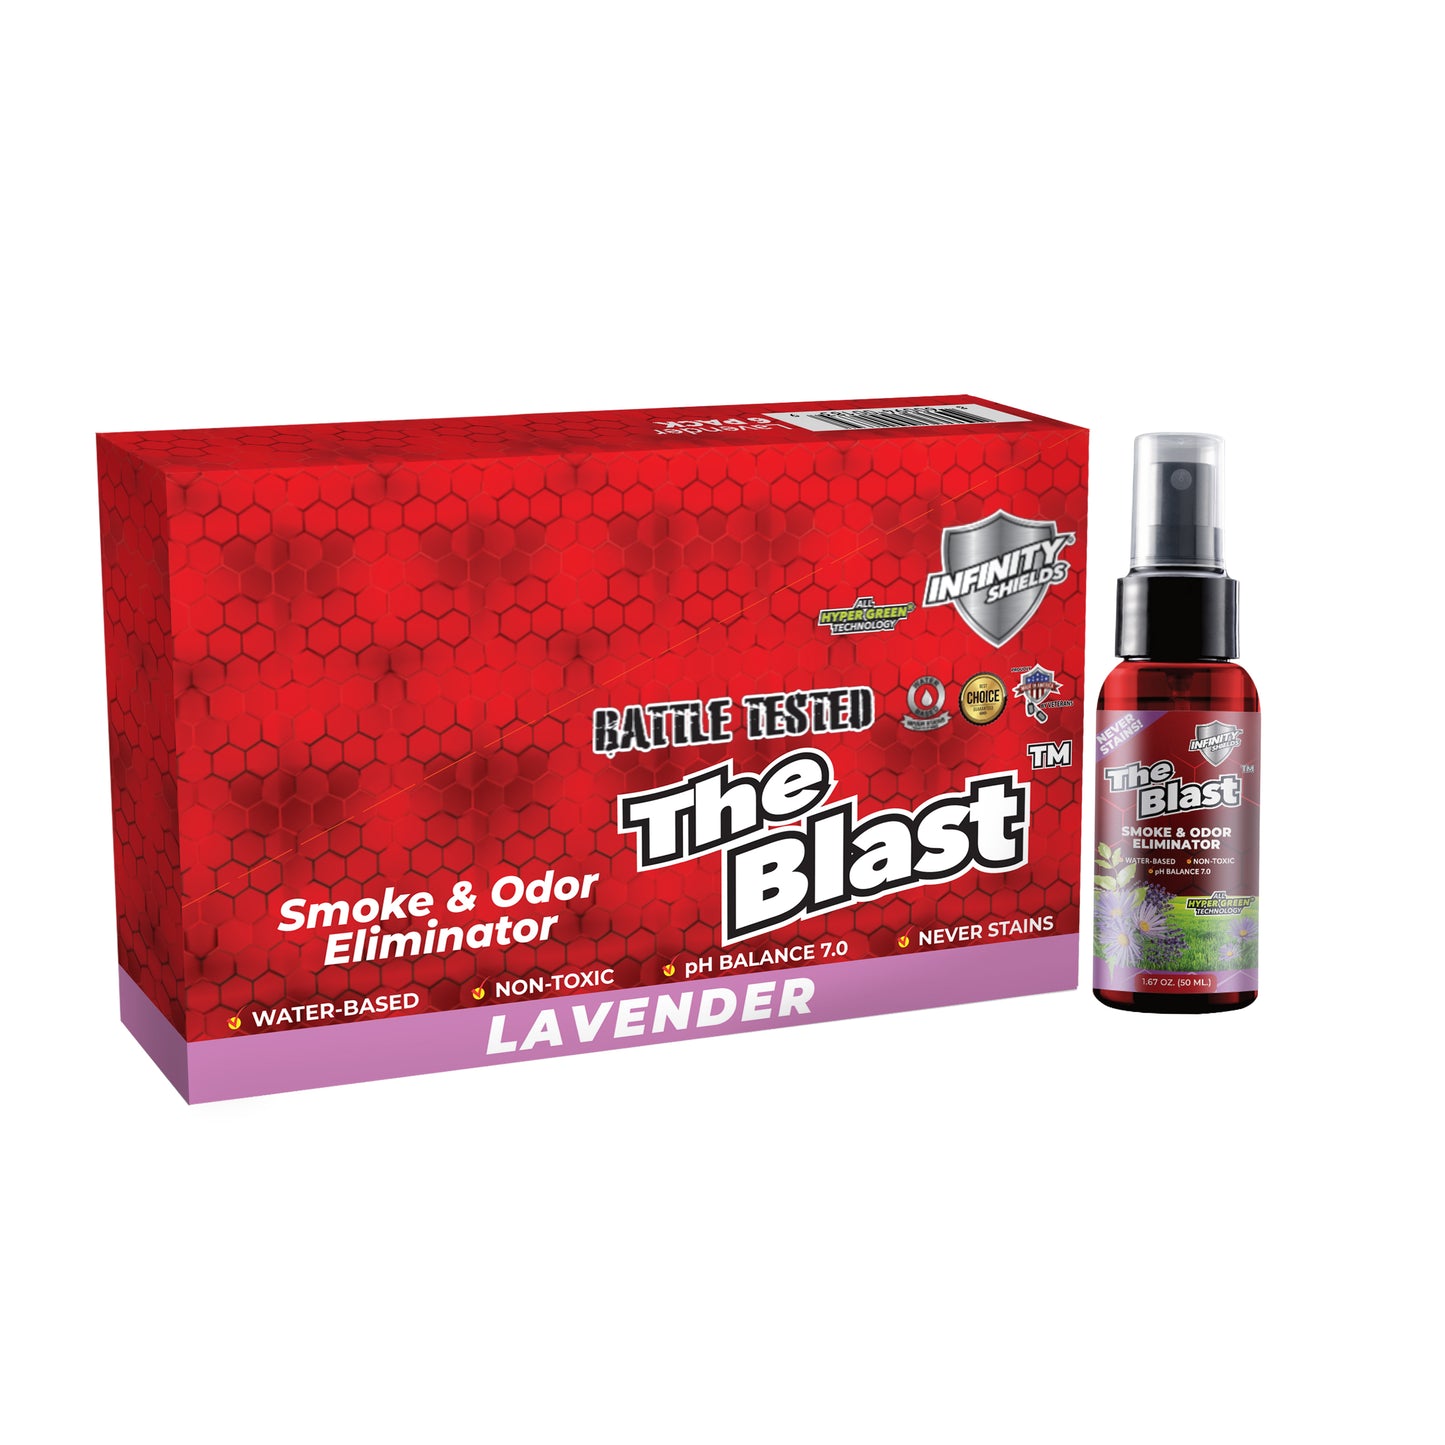 El eliminador de humo y olores explosivos | Paquete de 6 fundas | Mini botellas de niebla de 1,67 oz | Lavanda 